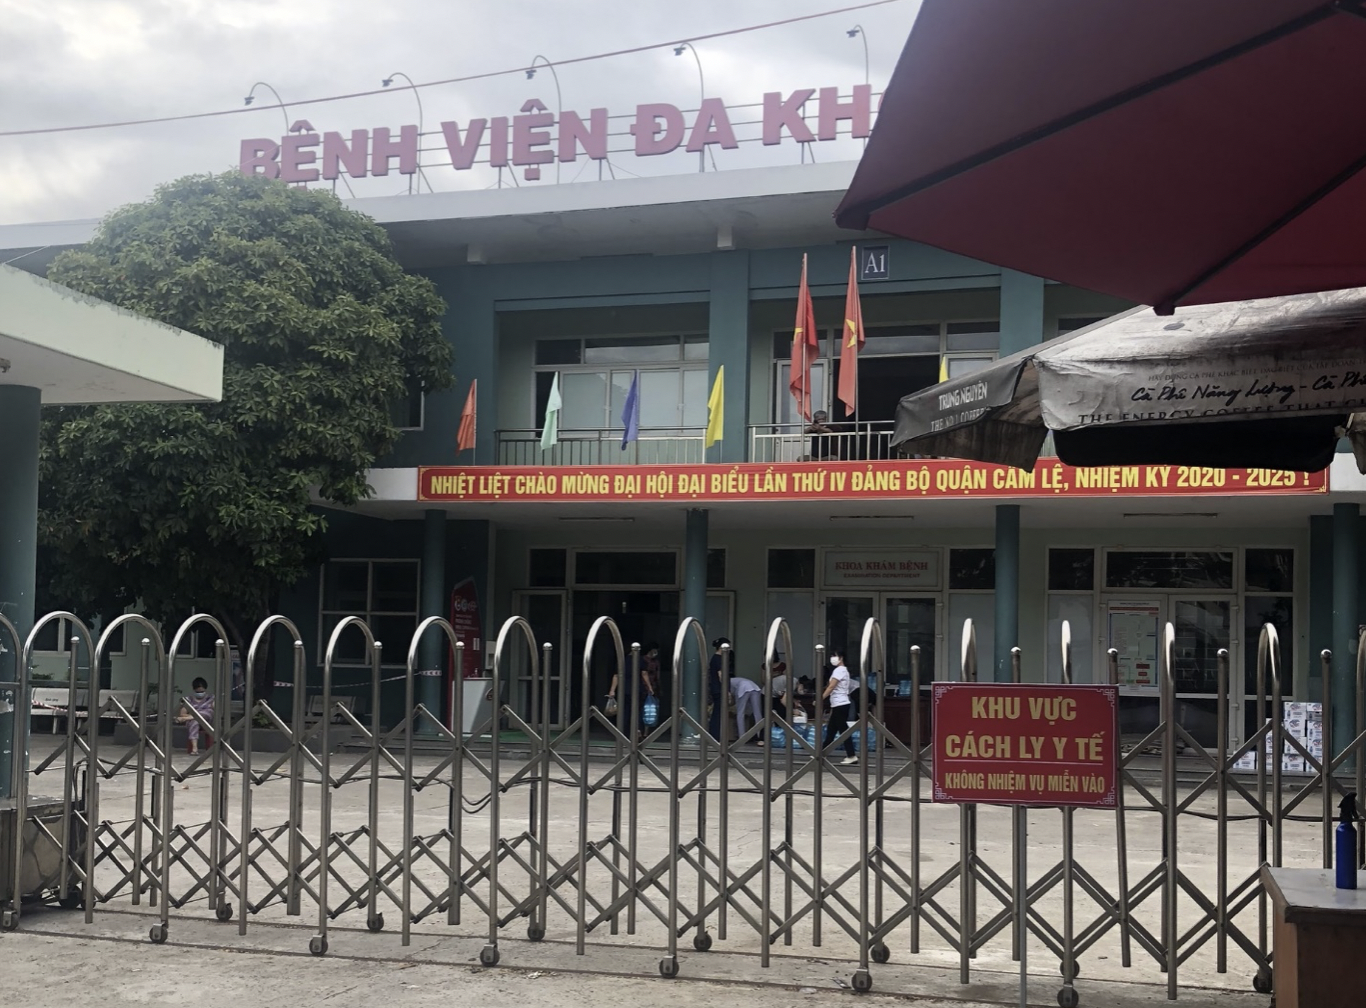 Khu vực nhóm thiện nguyện phát cơm miễn phí cho mọi người tại bệnh viện Cẩm Lệ, TP Đà Nẵng. Ảnh: NVCC